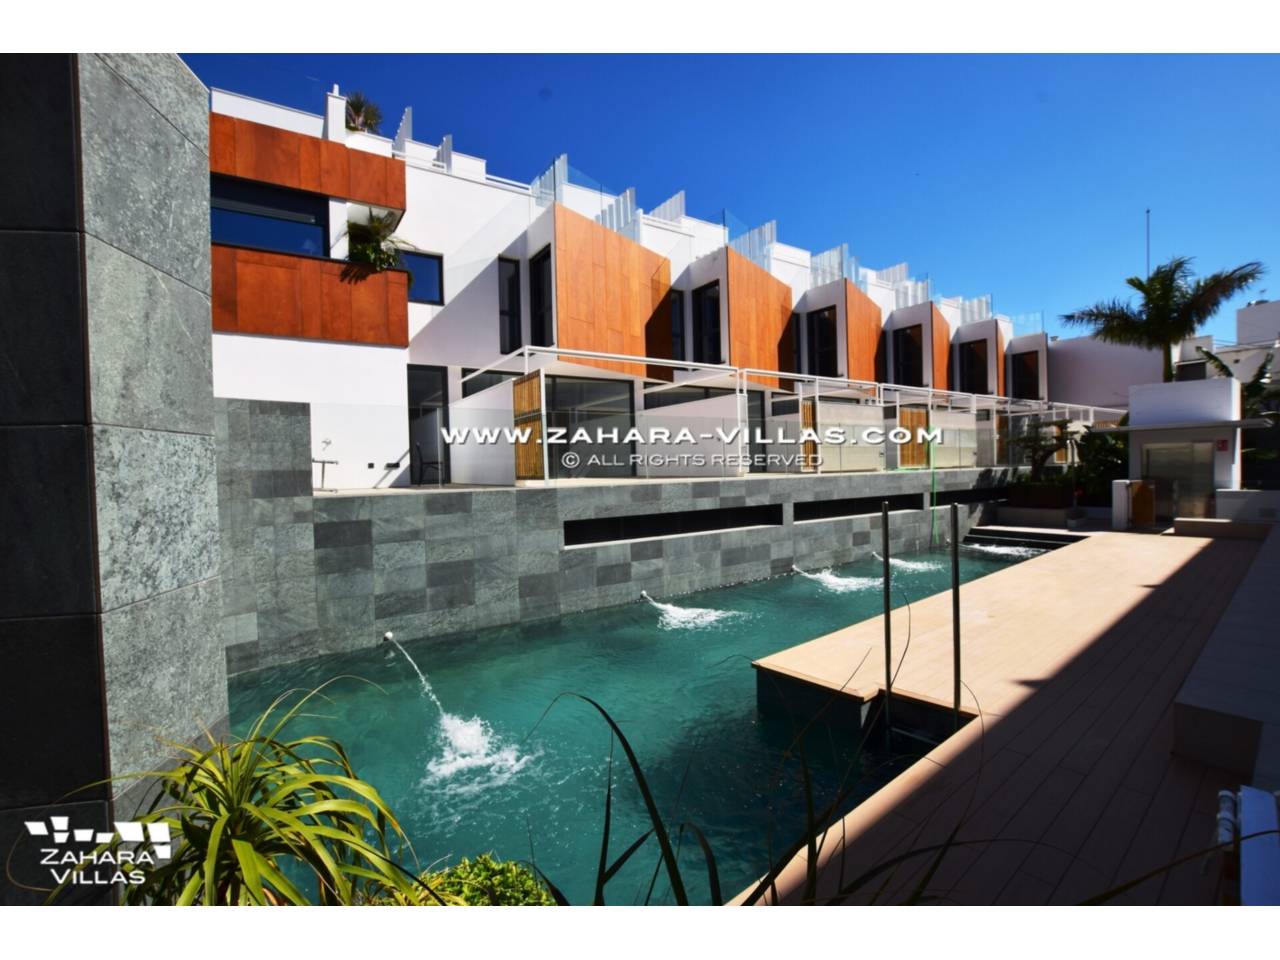 Imagen 15 de Promoción obra nueva terminada "EL OASIS DE ZAHARA" viviendas adosadas junto al mar